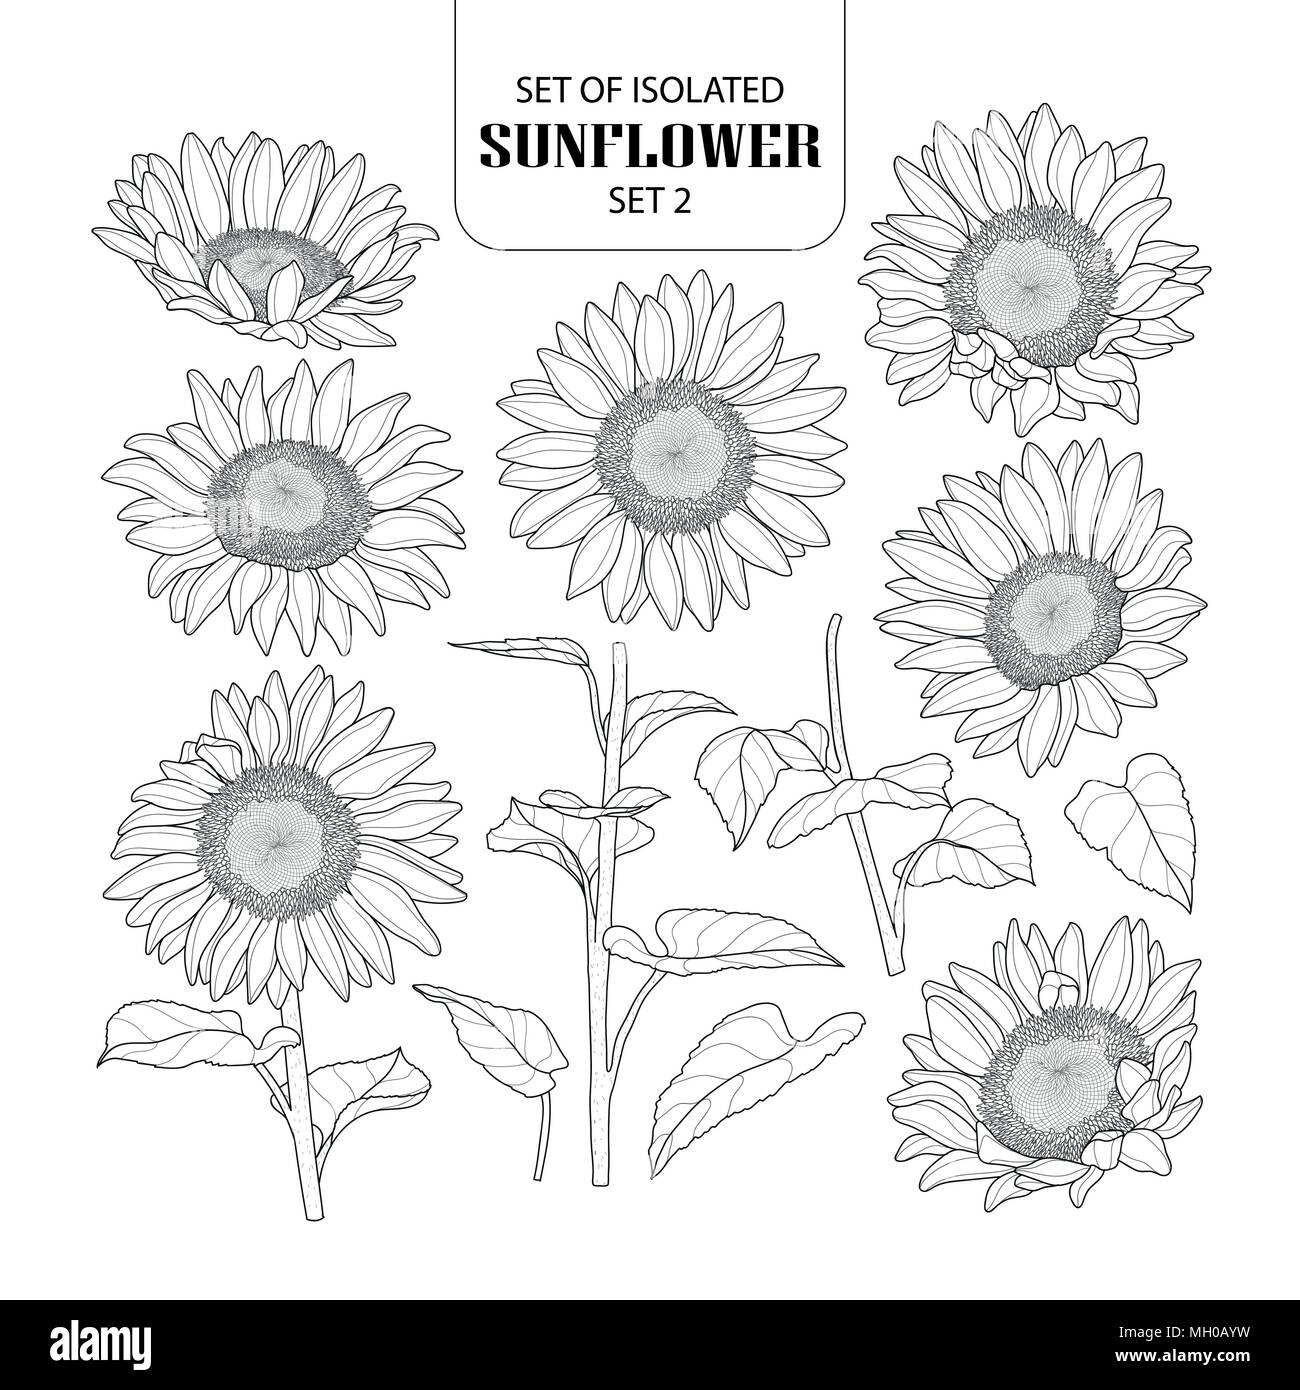 Eingestellt von isolierten Sonnenblumen Set 2. Süße Hand gezeichnet Vector Illustration in schwarzer Umriss und weißen Ebene auf weißem Hintergrund. Stock Vektor